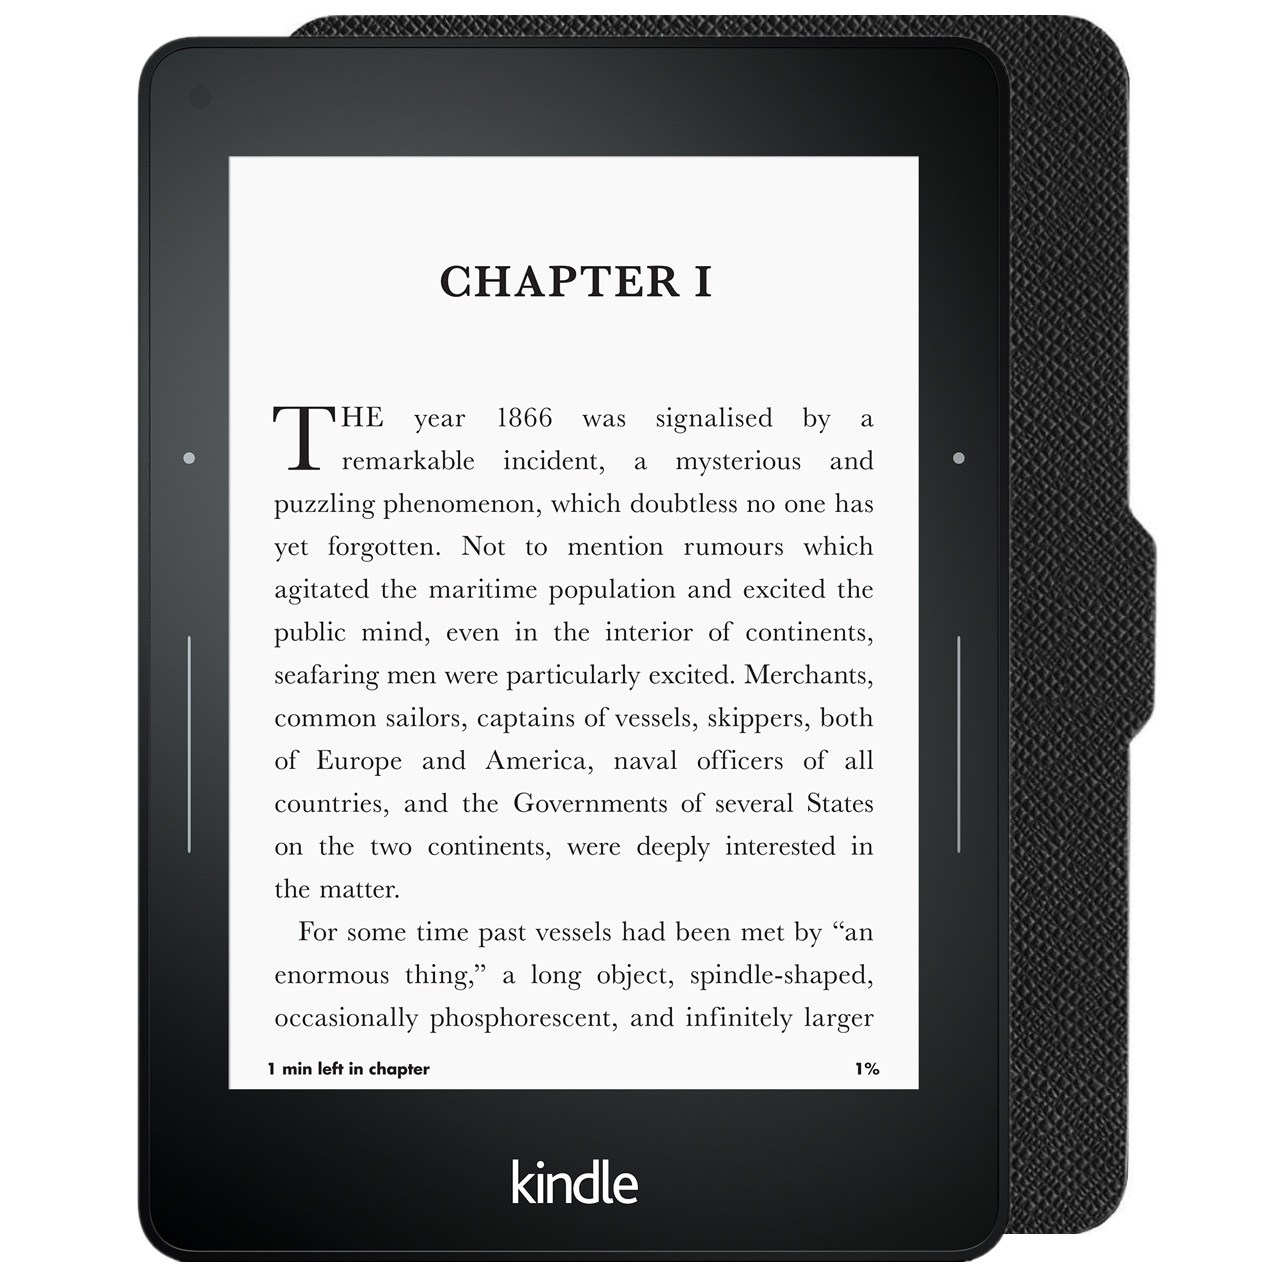 کتاب خوان آمازون مدل Kindle Voyage نسل هفتم همراه با کاور چرمی - ظرفیت 4 گیگابایت